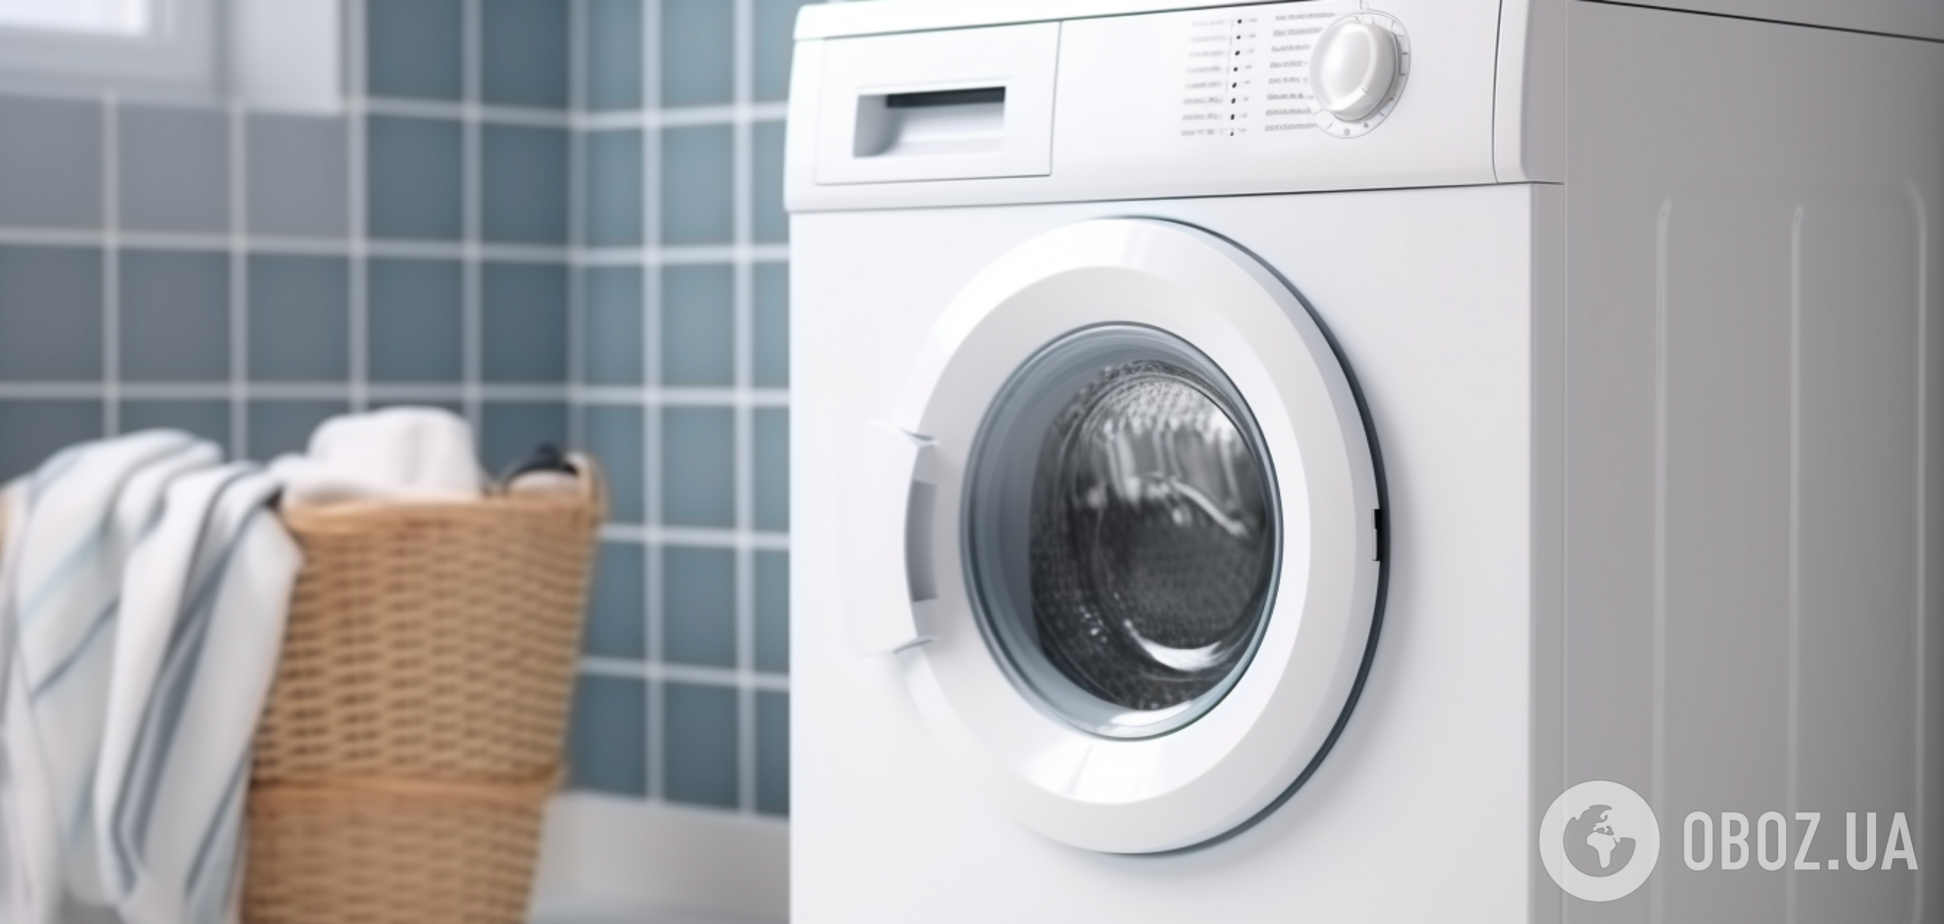 Самый простой способ почистить стиральную машину: потратите минимум средств и усилий